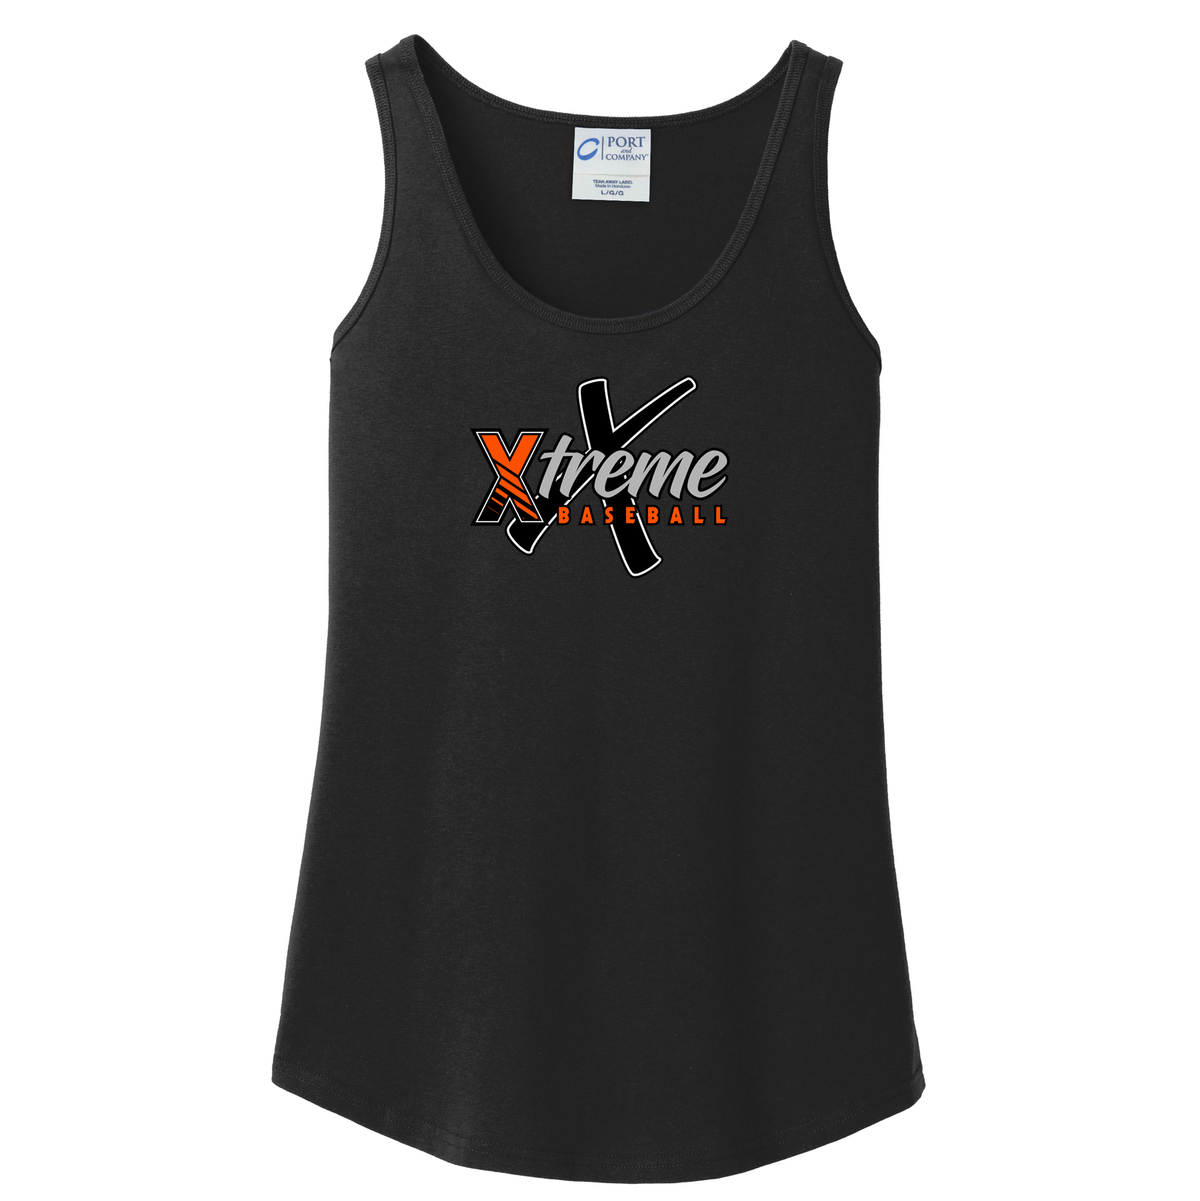 Xtreme Baseball Women's Tank Top